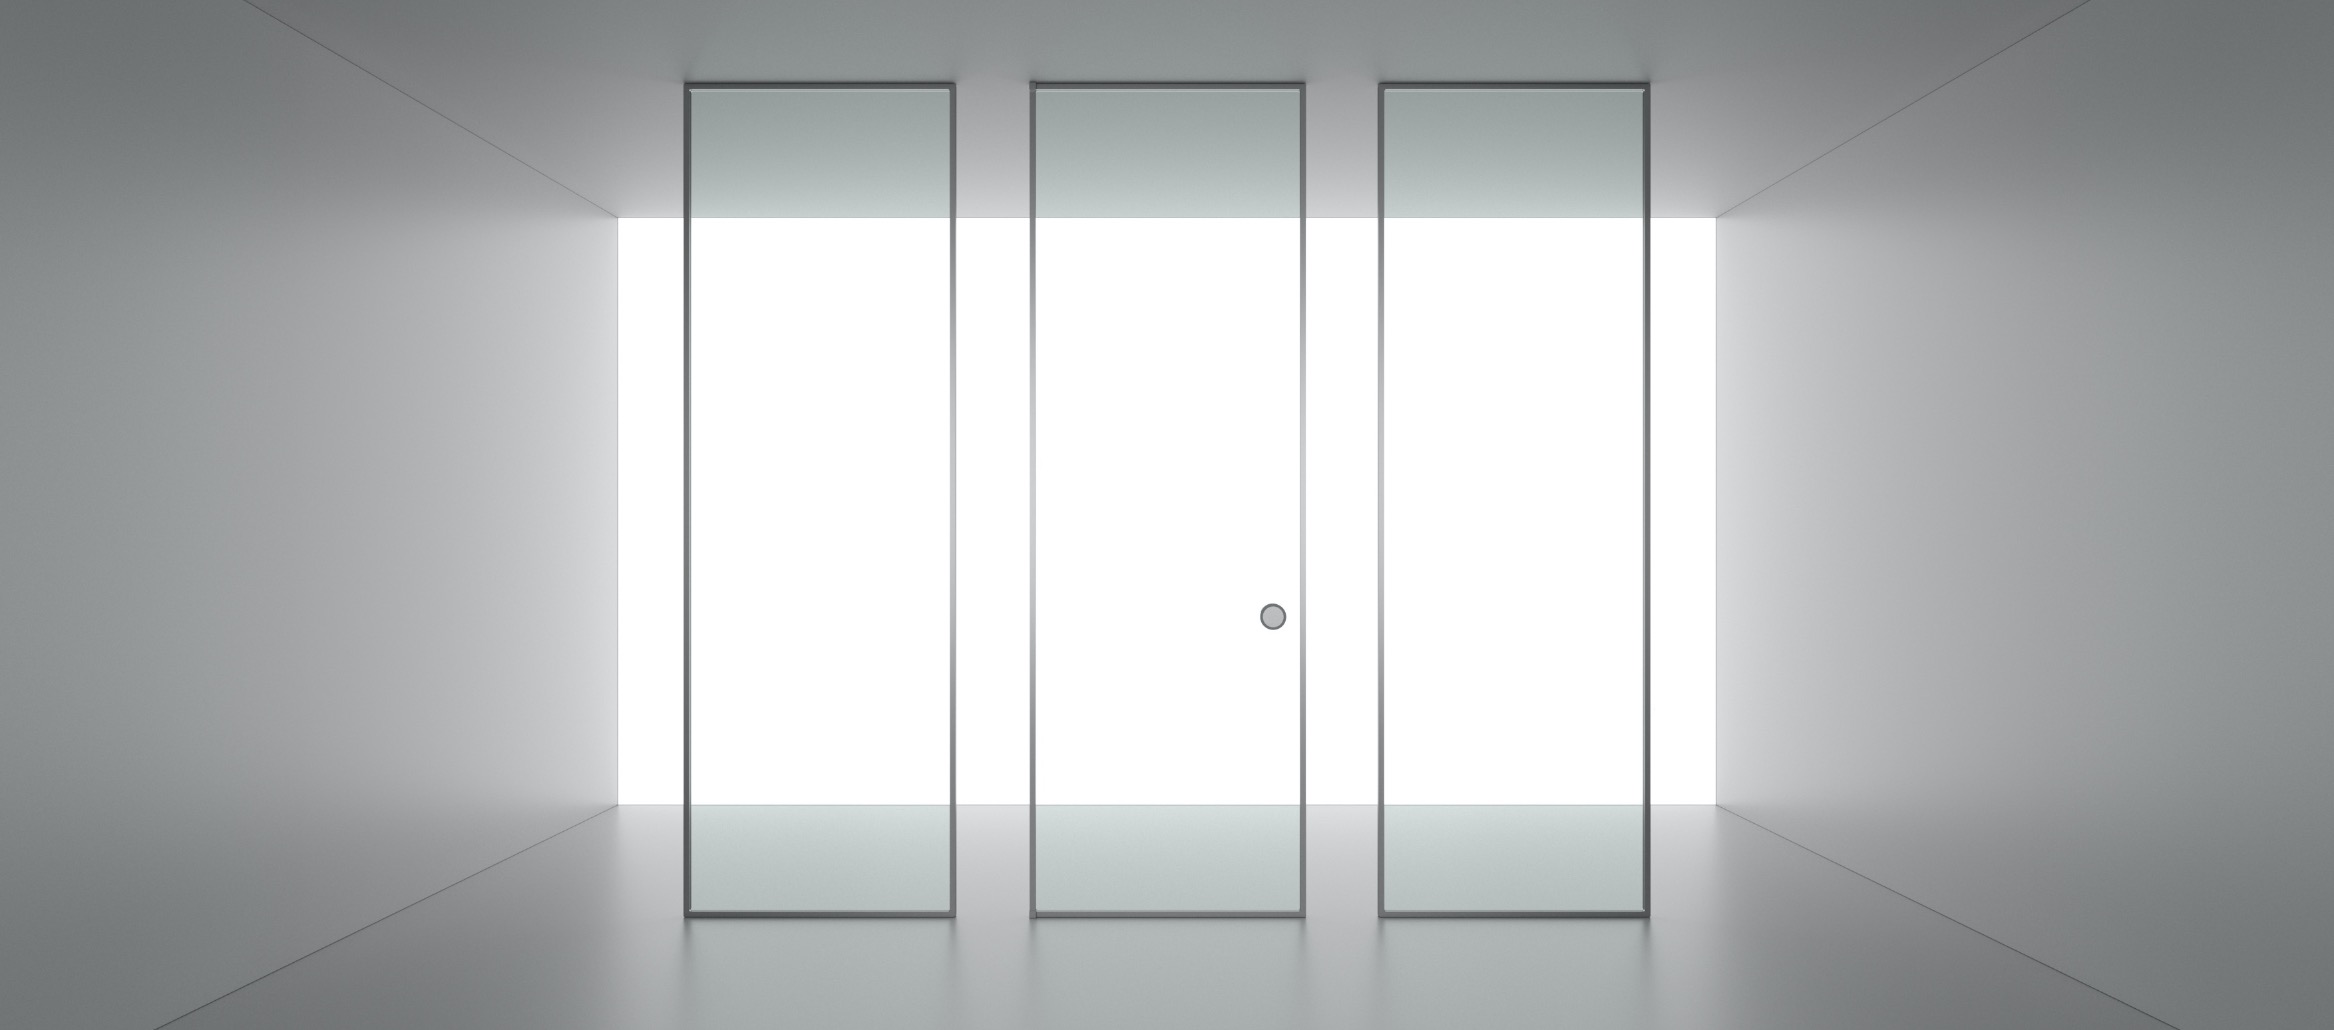 Le système modulaire Suite est composé de panneaux fixes et de portes en verre et aluminium